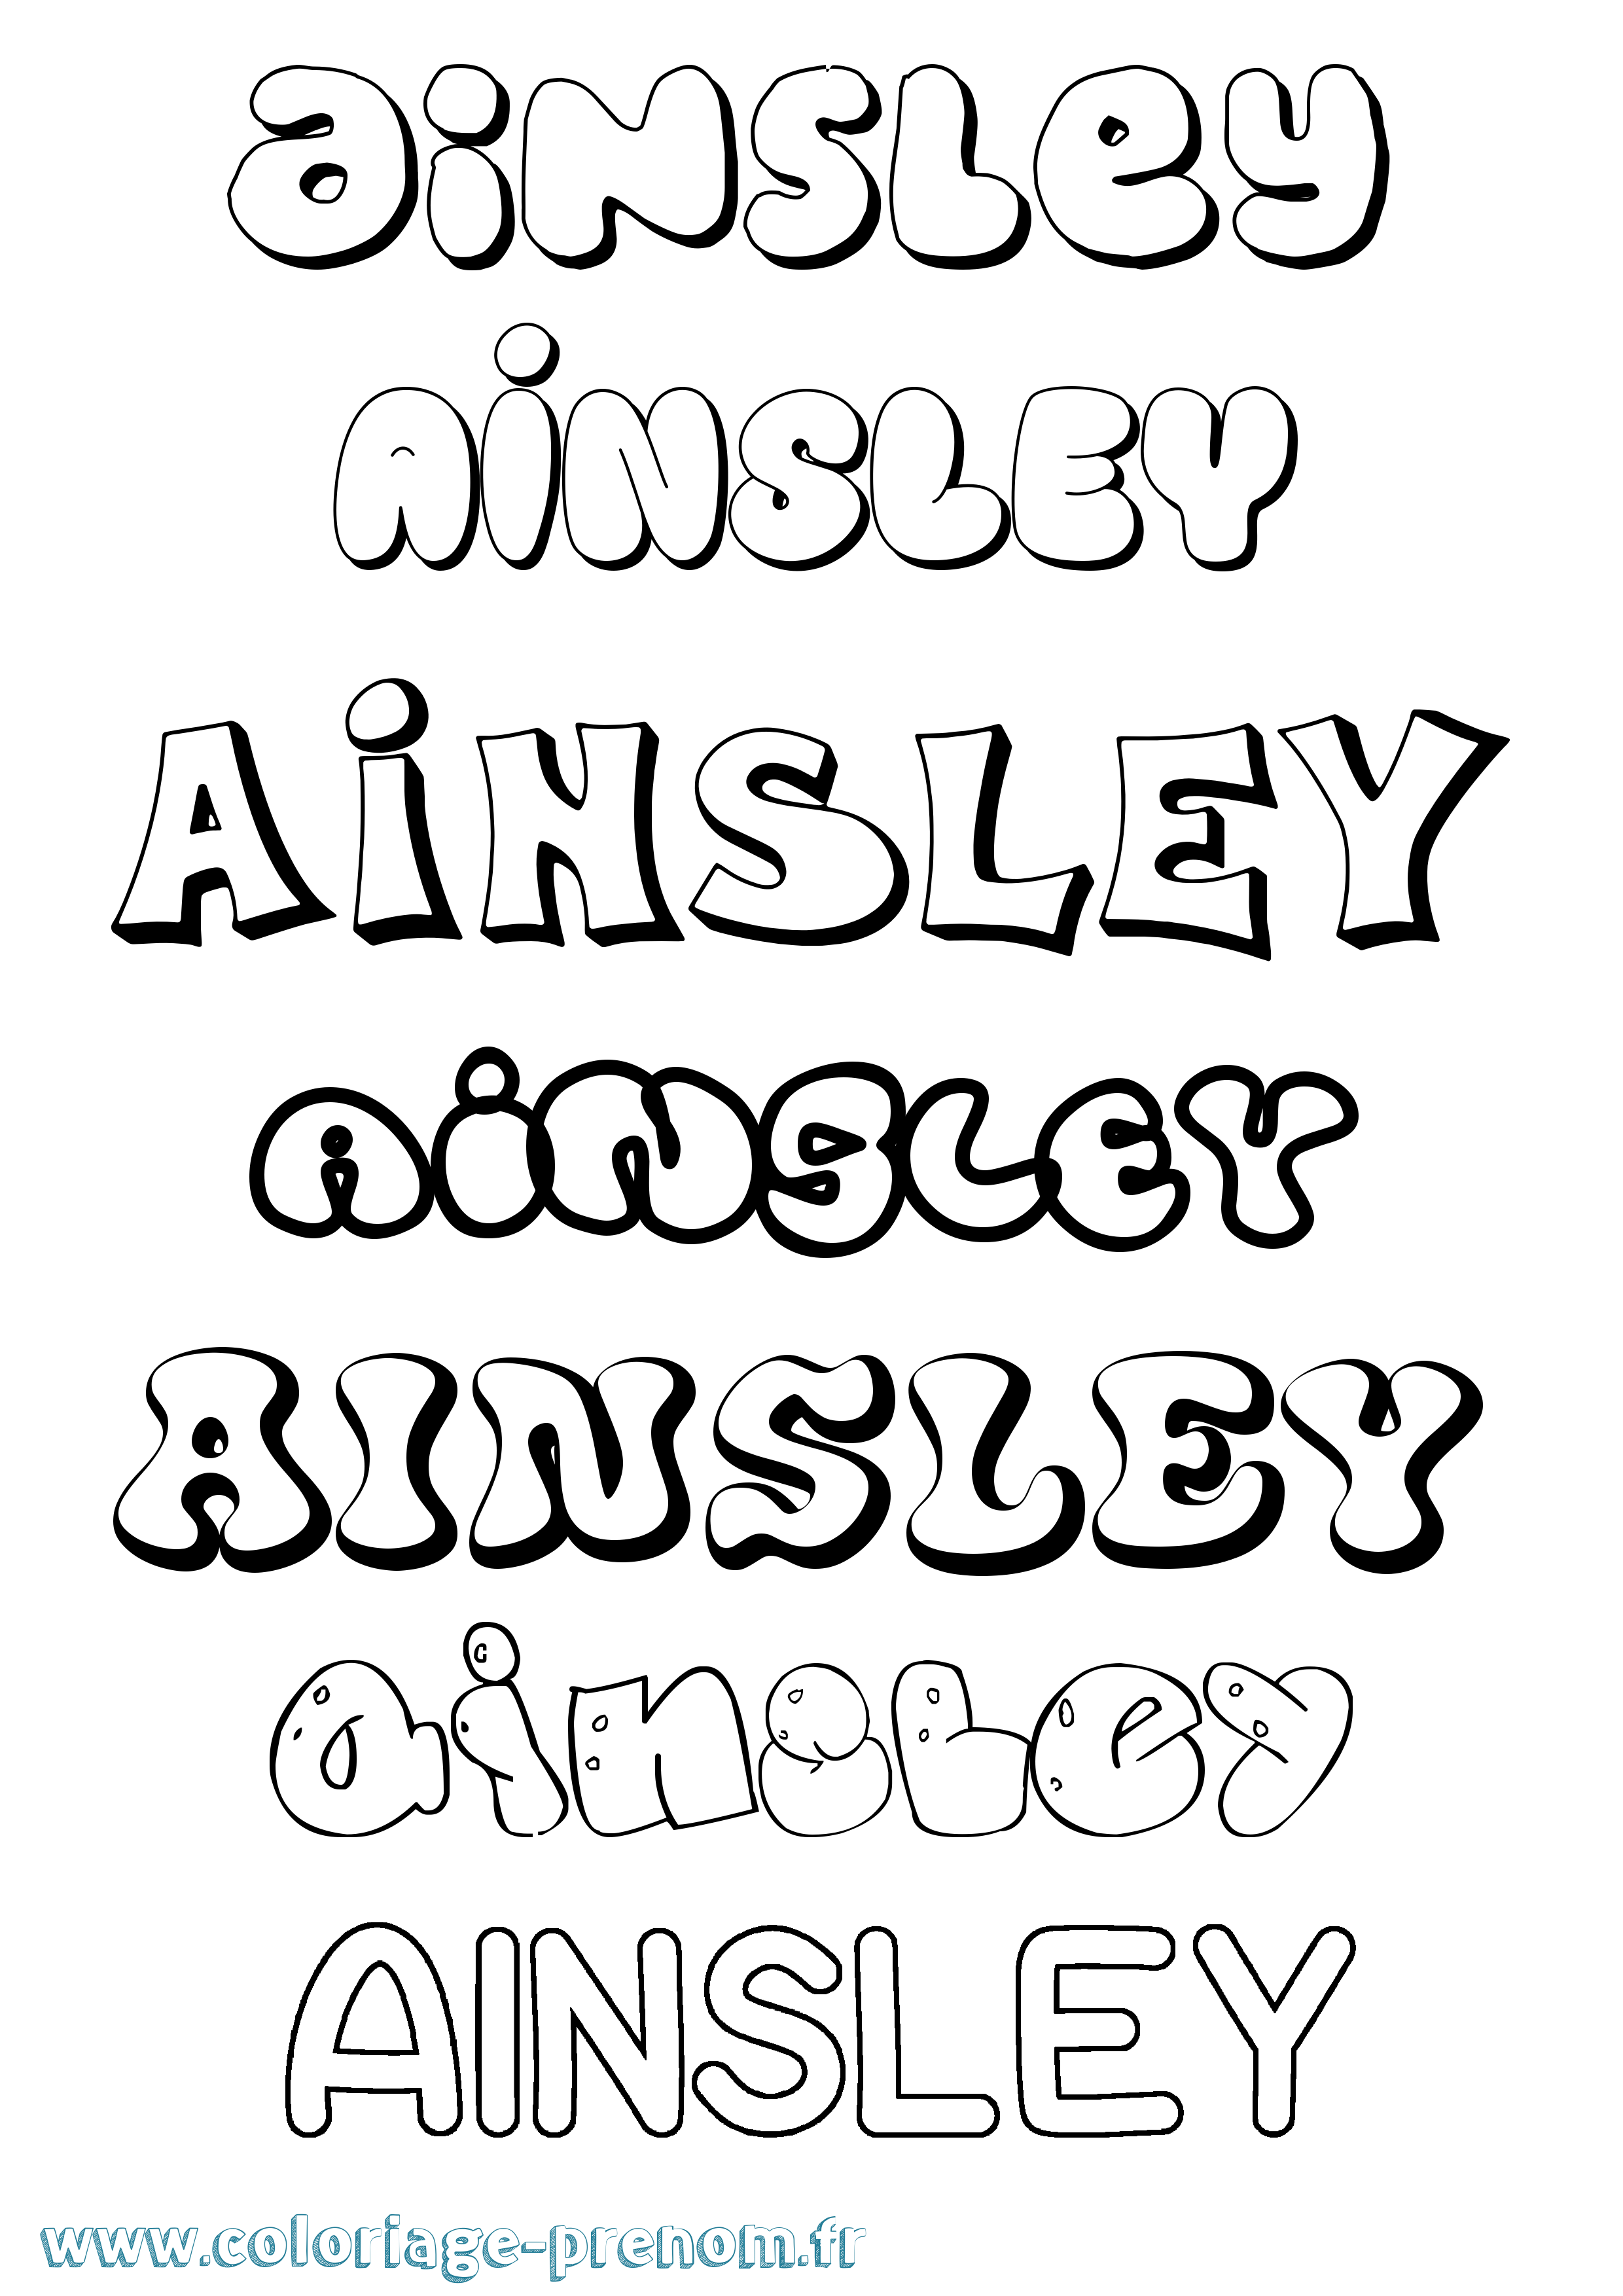 Coloriage prénom Ainsley Bubble